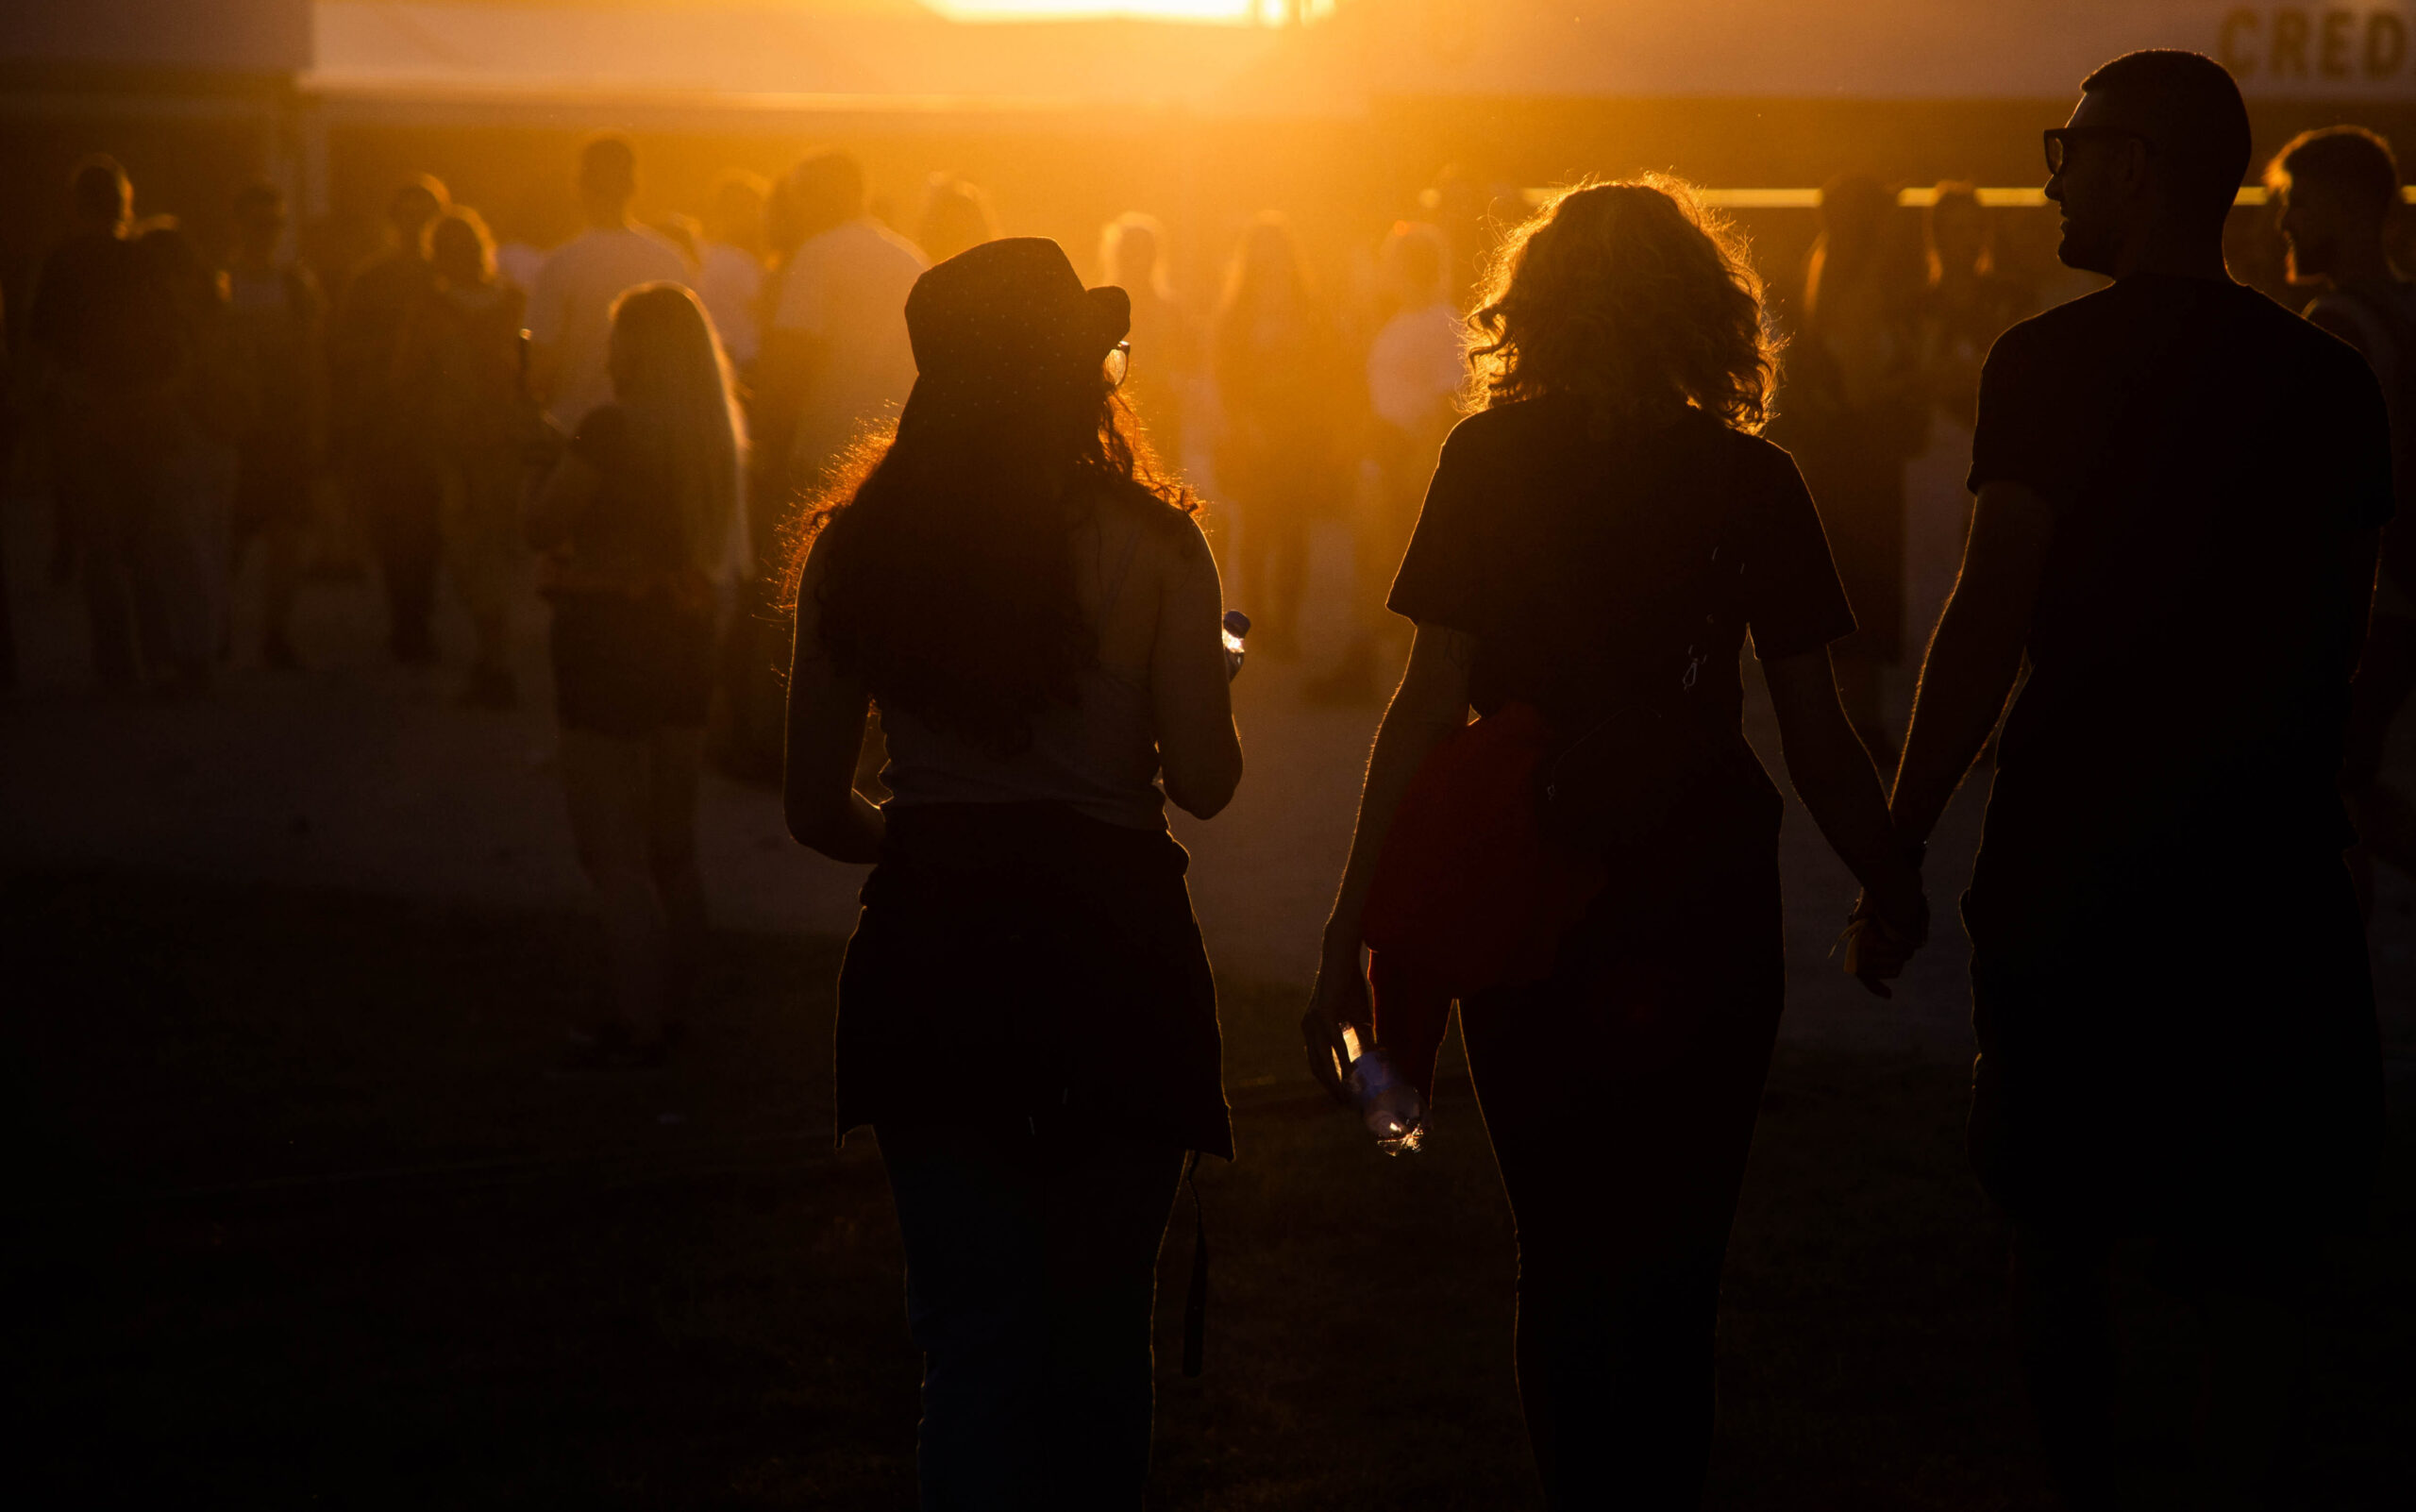 Sunset at Tahawai Festival